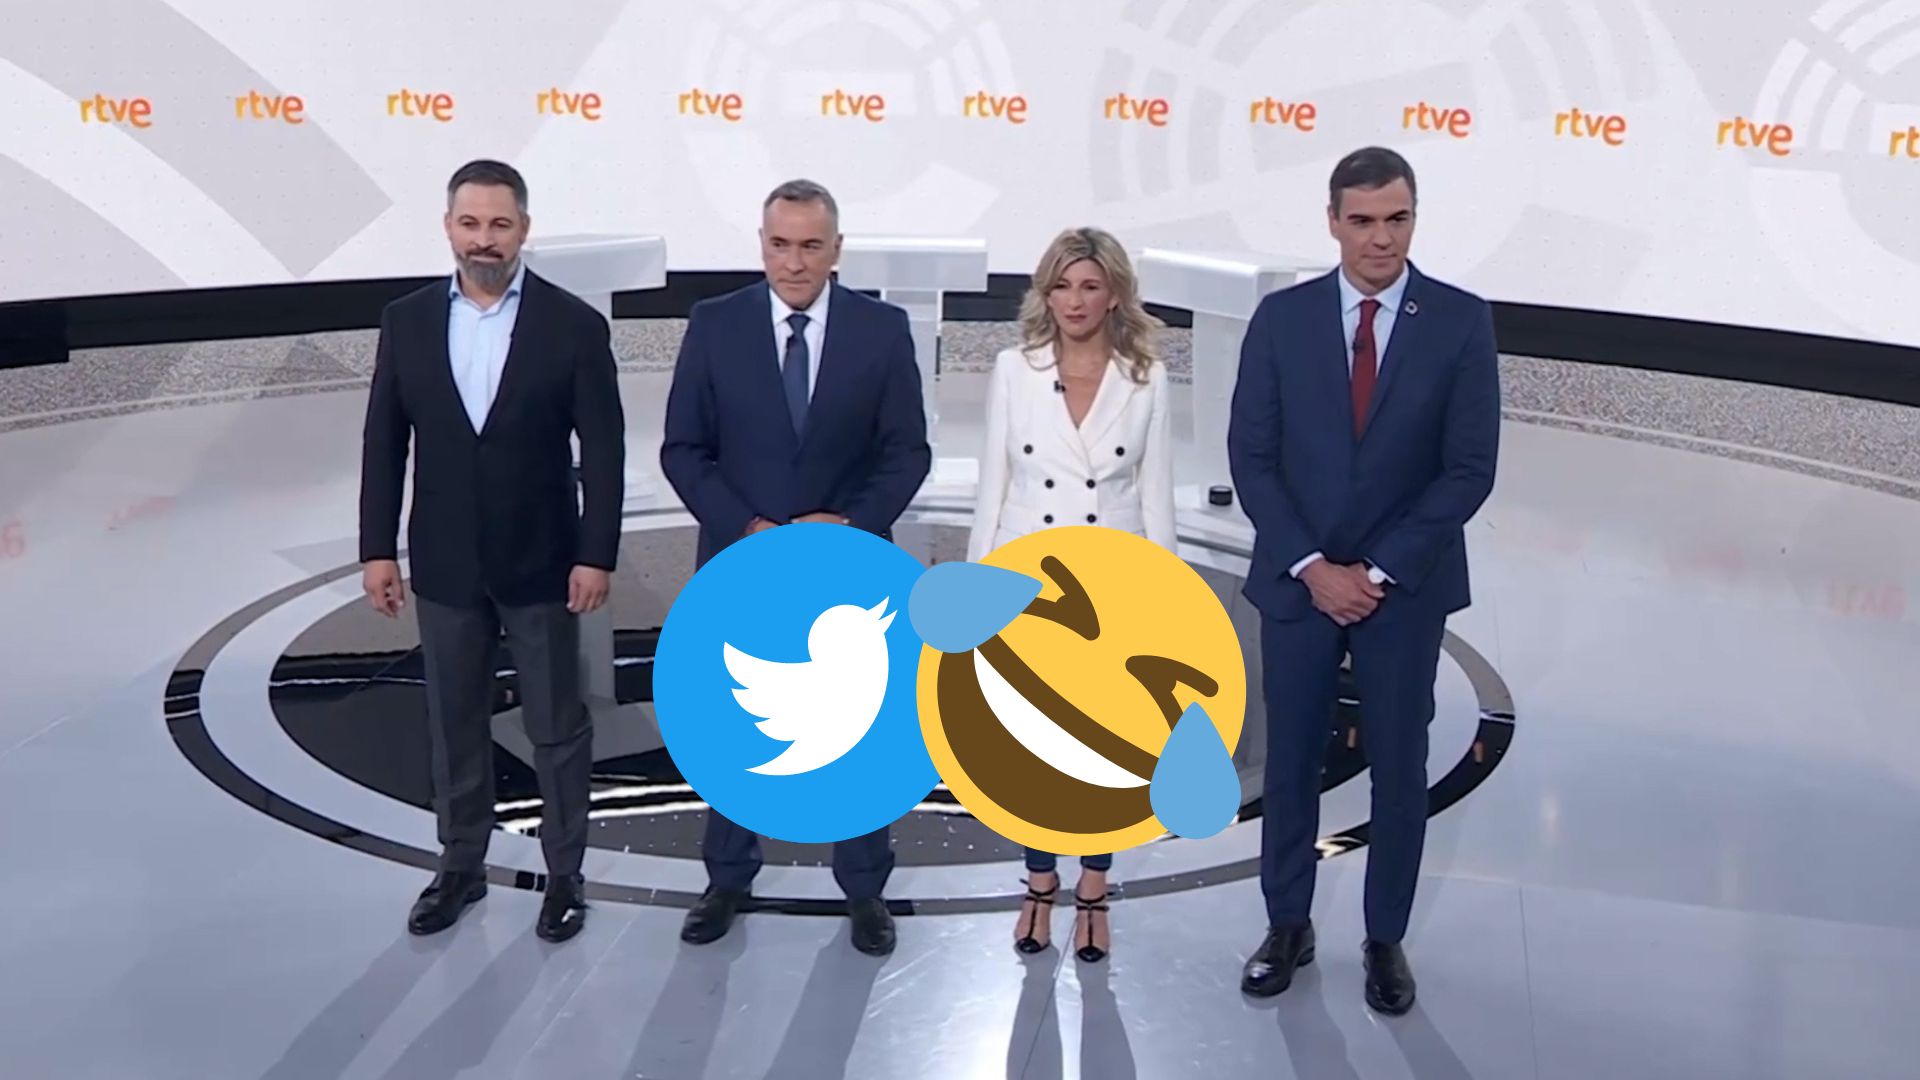 Els millors mems del debat d'avui a TVE: Sense Feijóo i el "carinyo" entre Sánchez i Díaz